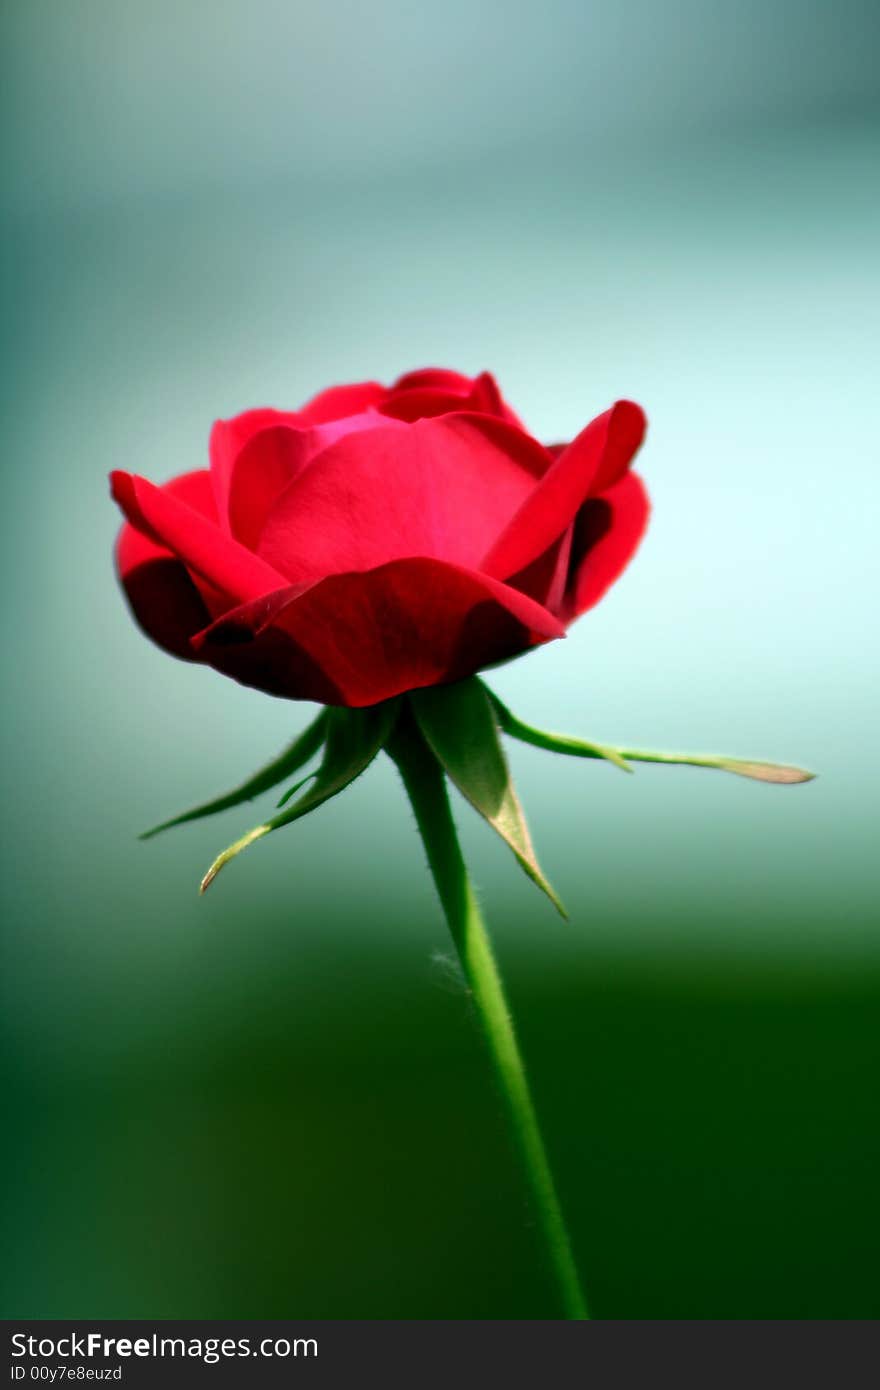 Red rose on the stalk. Red rose on the stalk